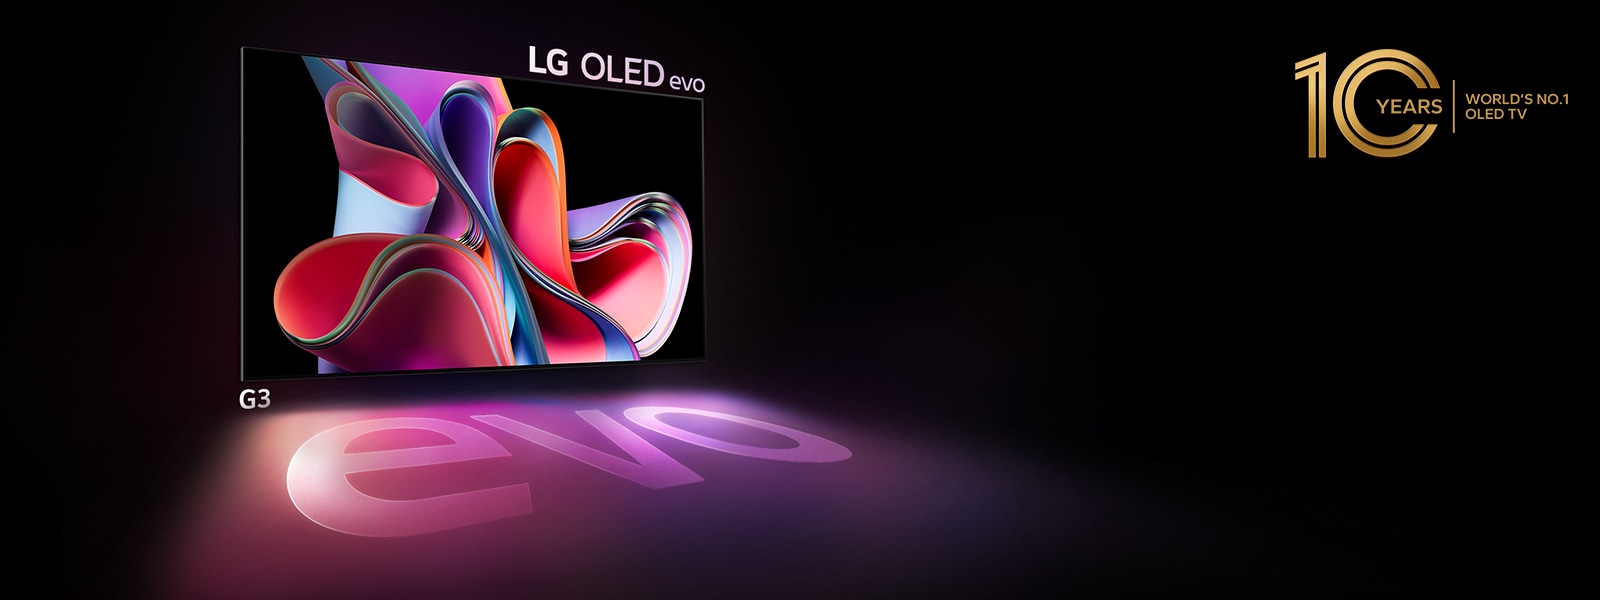 Televizor LG OLED G3 evo jasně září v tmavém prostoru. A vpravo nahoře je umístěno logo na oslavu 10. výročí televizorů OLED.